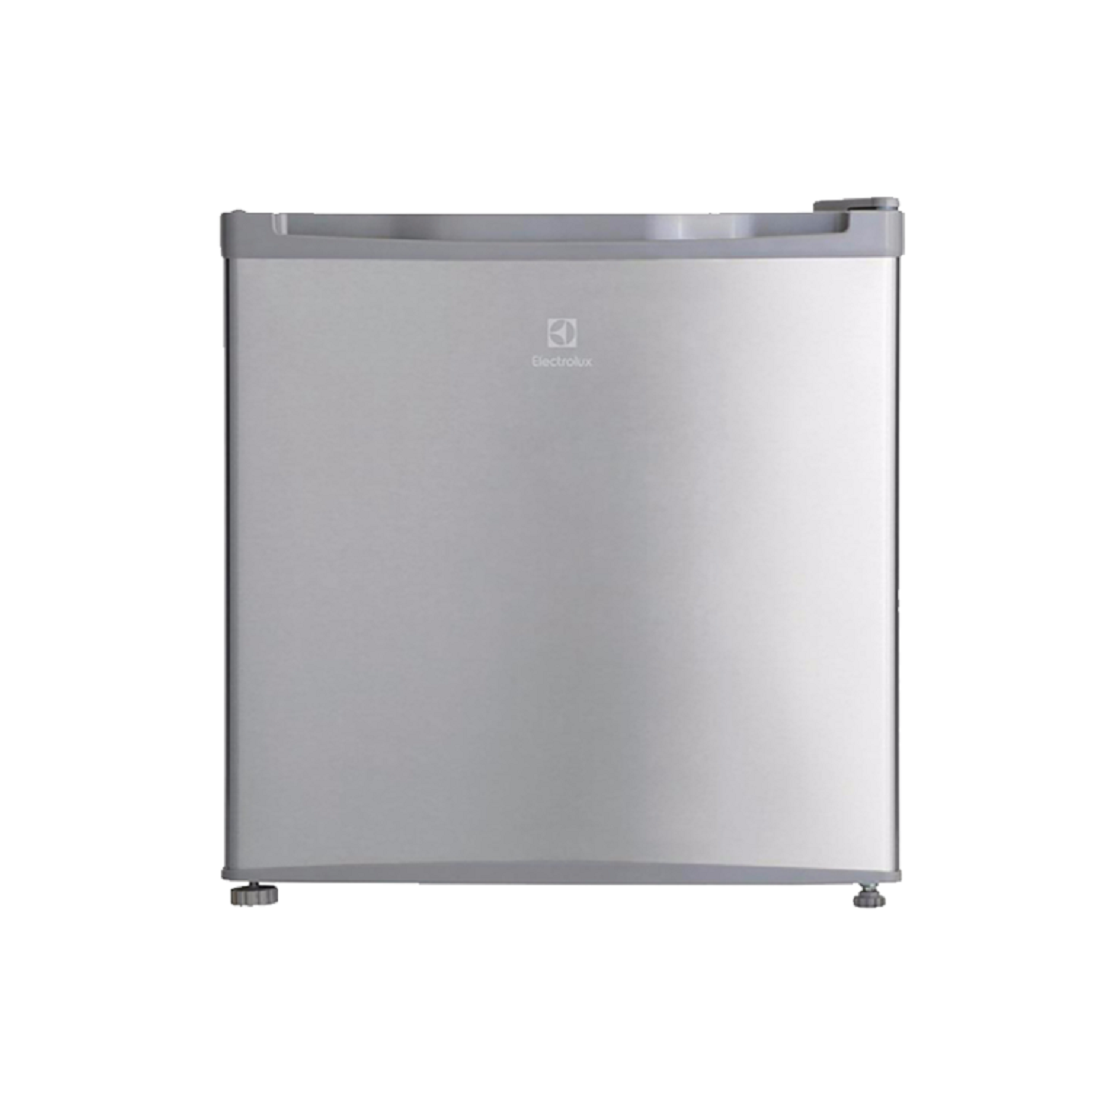 Tủ Lạnh Electrolux 46 Lít EUM0500SB